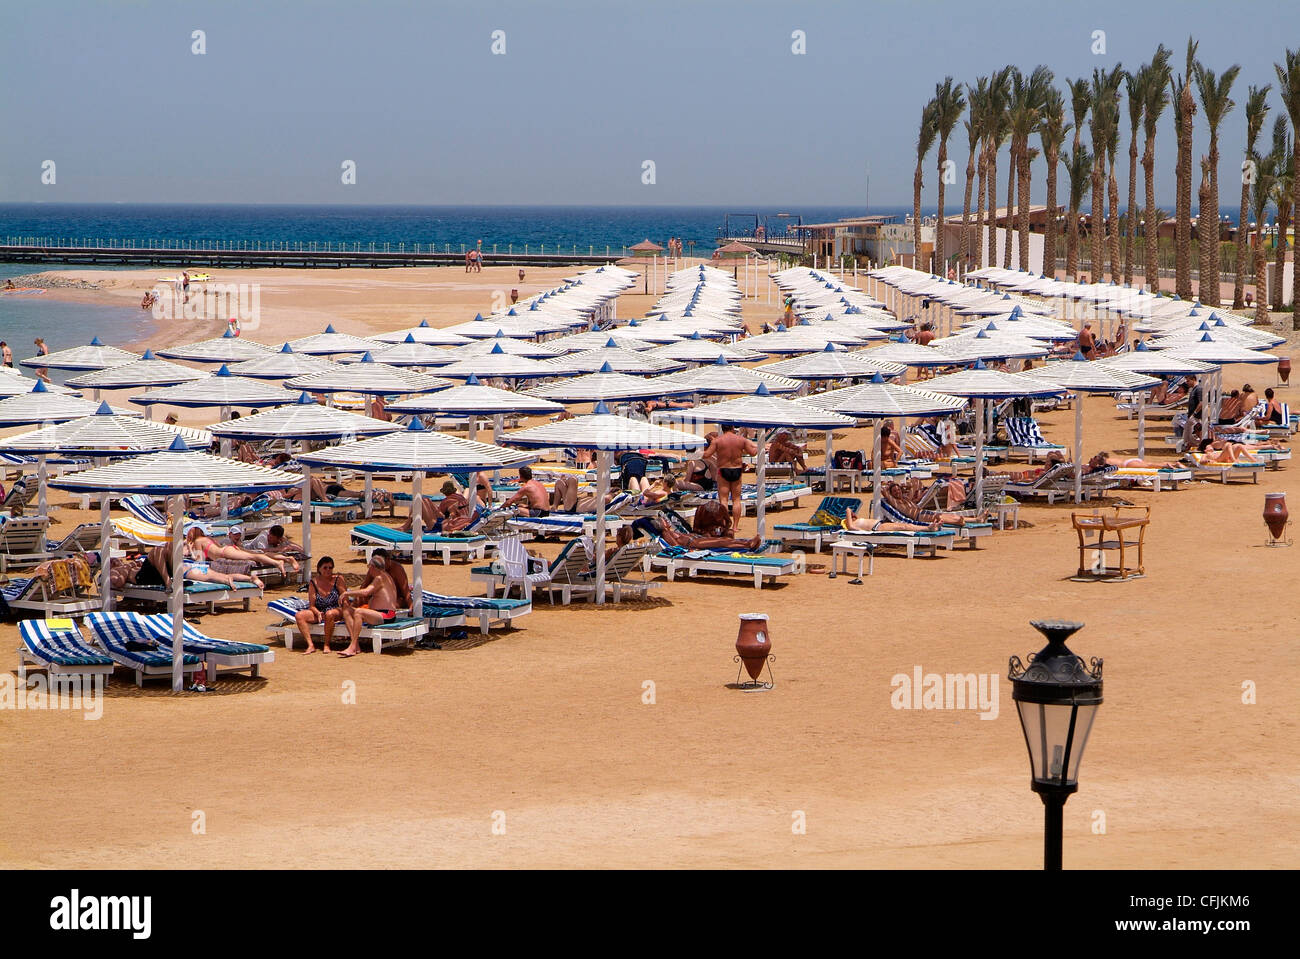 La playa del hotel, Hurghada, Mar Rojo, Egipto, el Norte de África, África Foto de stock